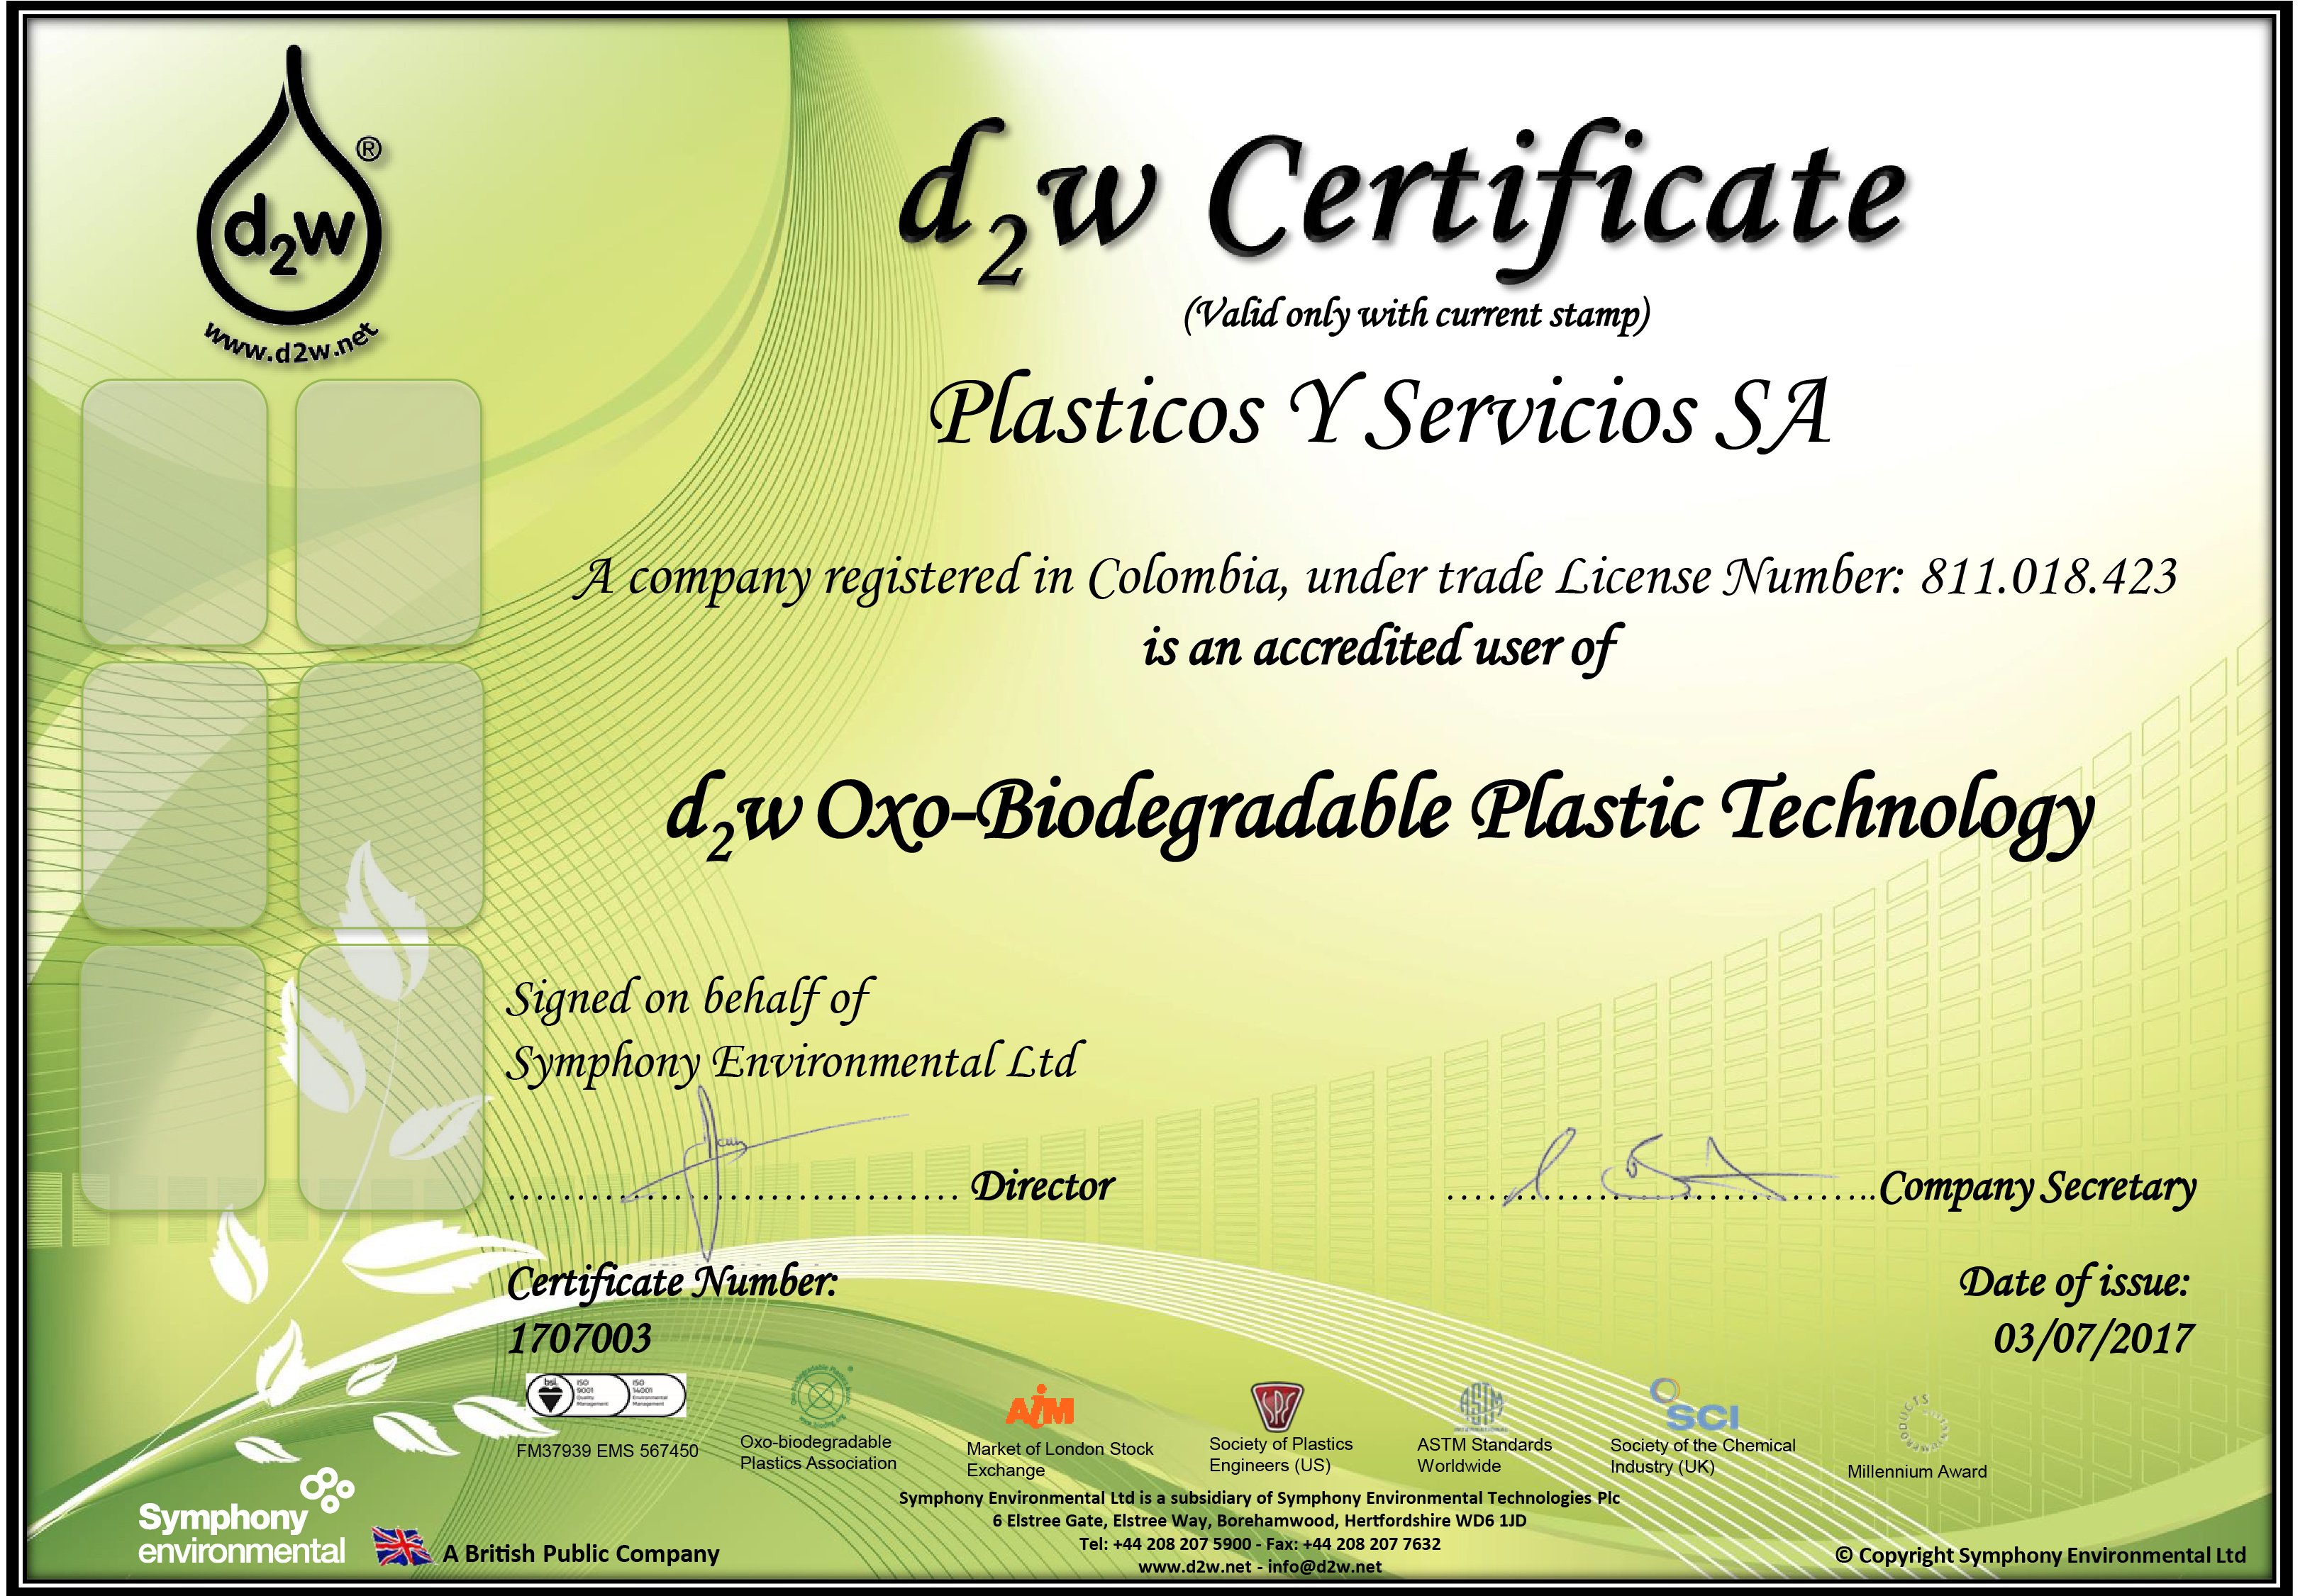 Plasticos-Y-Servicios-SA-d2w-User-Certificate-1707003-3250x2251.jpg